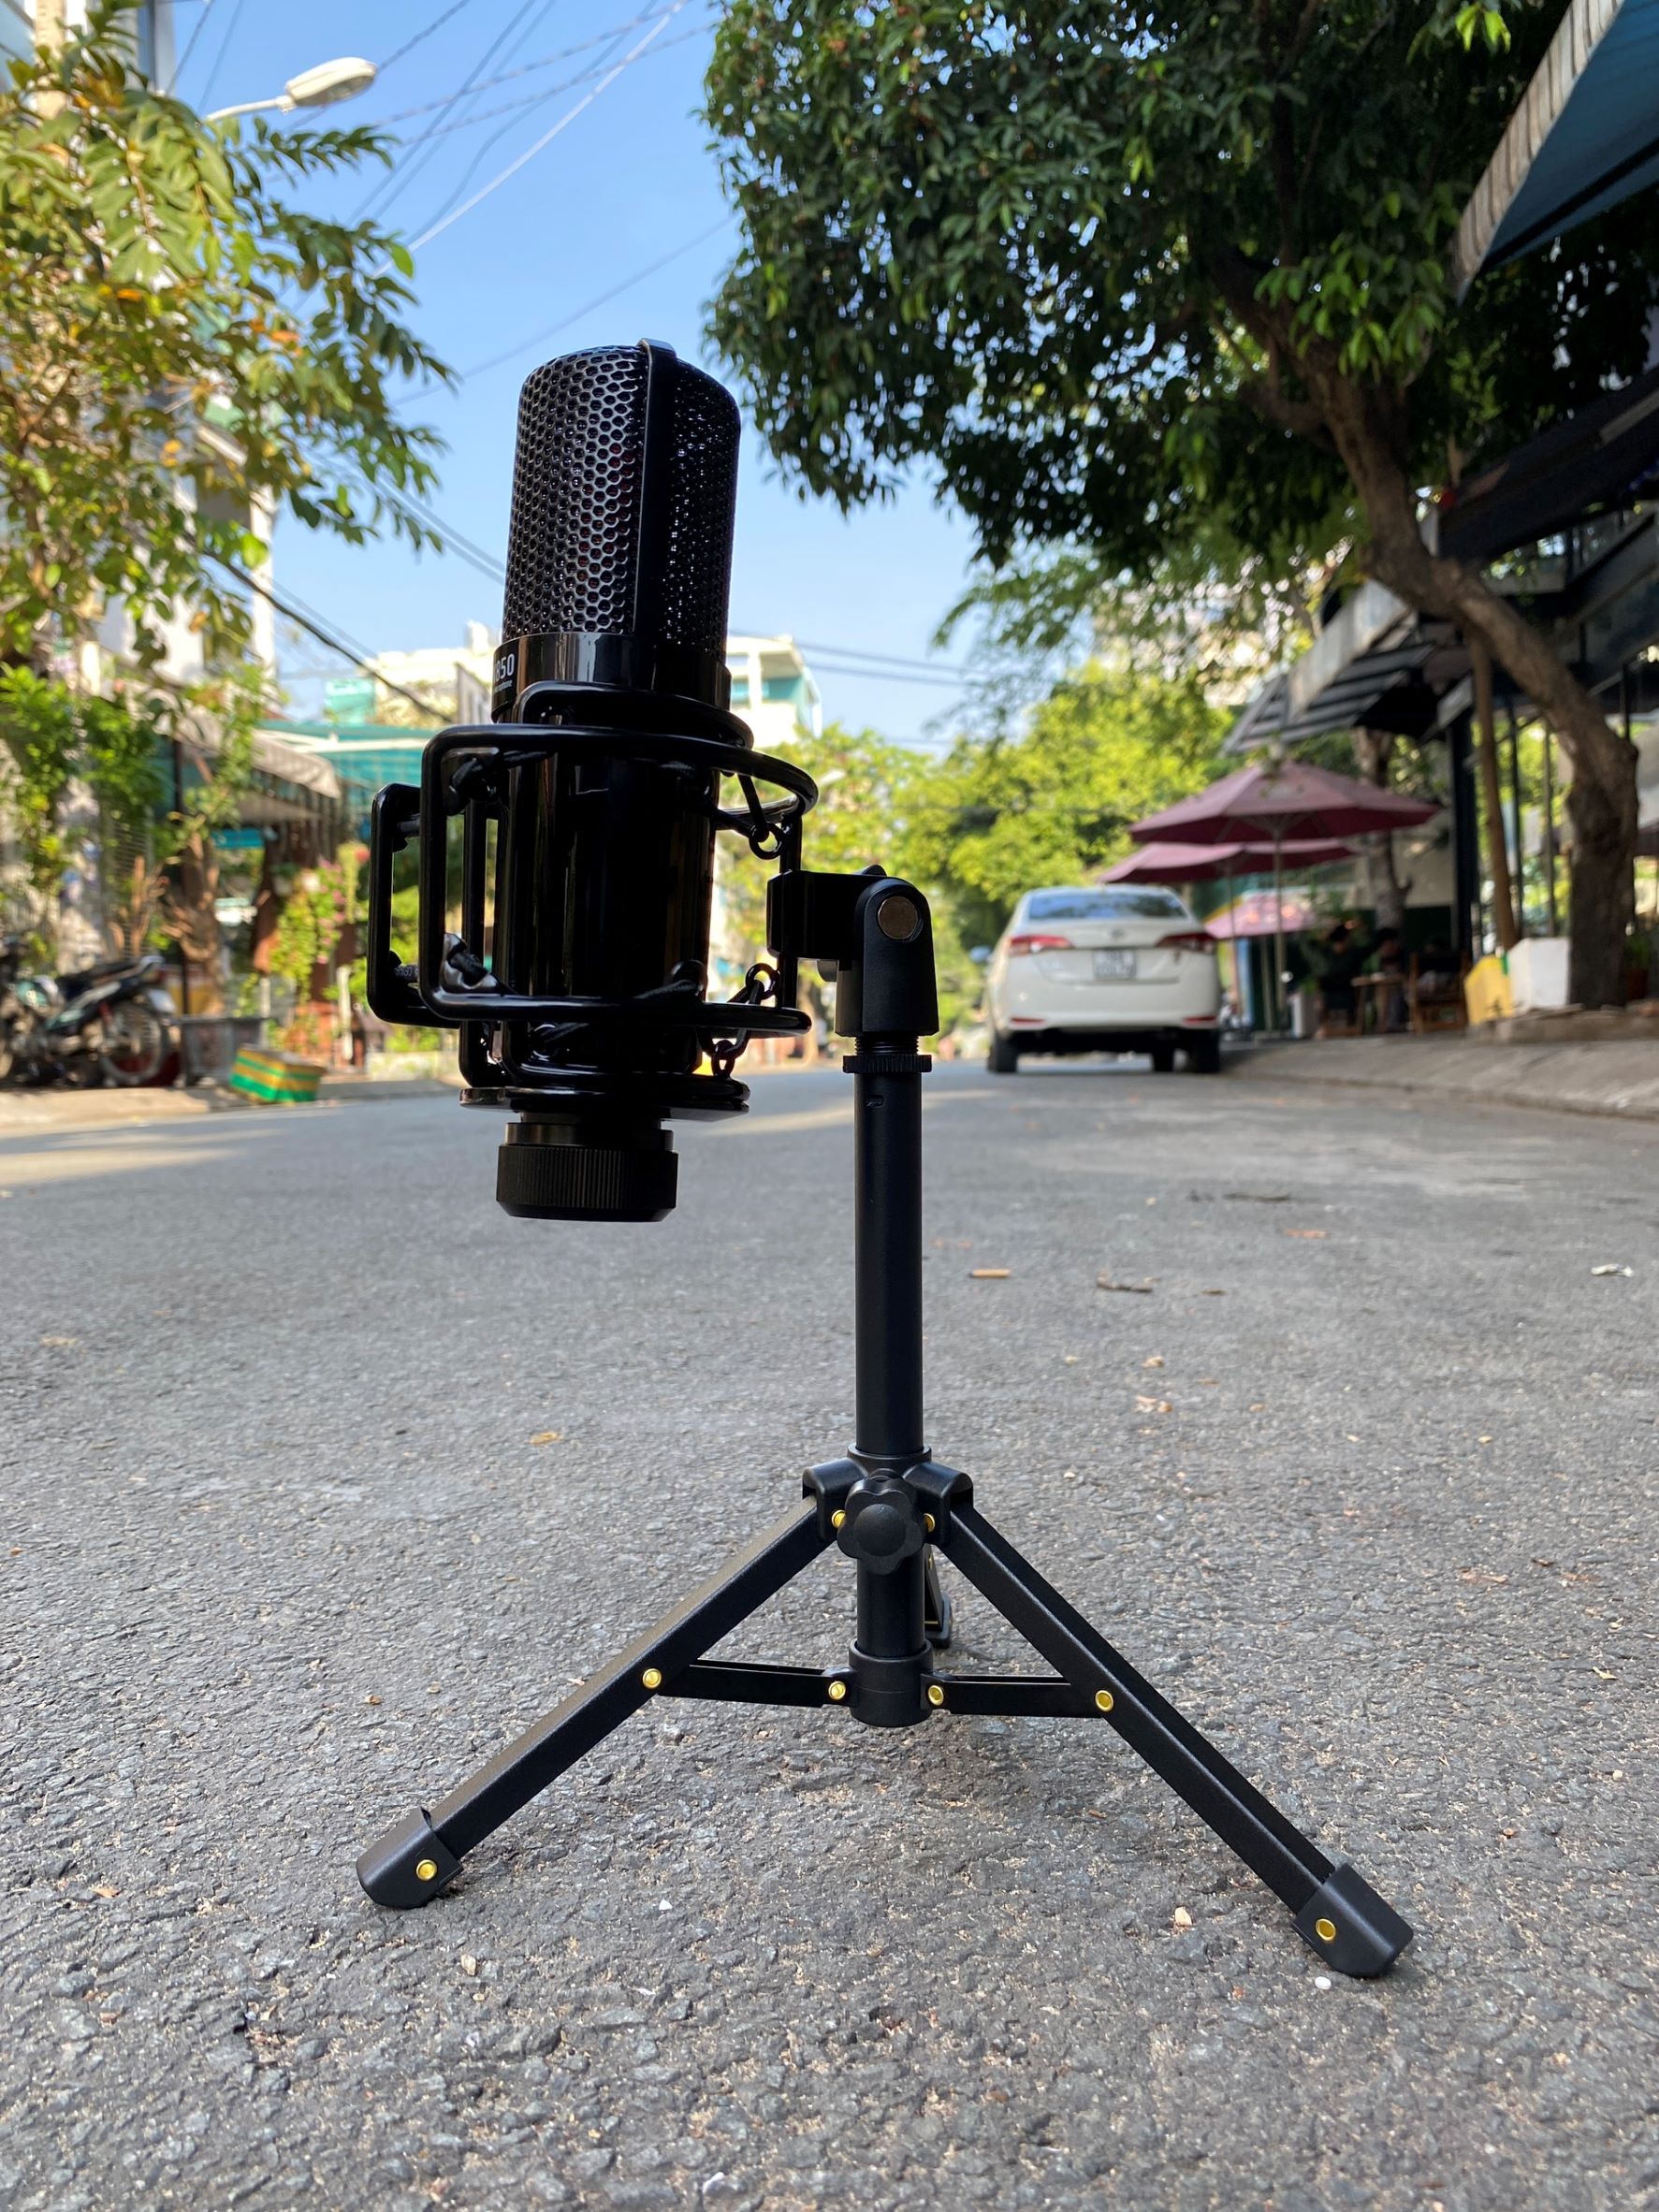 Chân kẹp micro MK02 Vip - chân kẹp mic để bàn loại cao cấp - Cấu tạo hợp kim chắc chắn, nhỏ gọn - Chuyên dùng cho các loại micro thu âm, livestream, karaoke, phỏng vấn